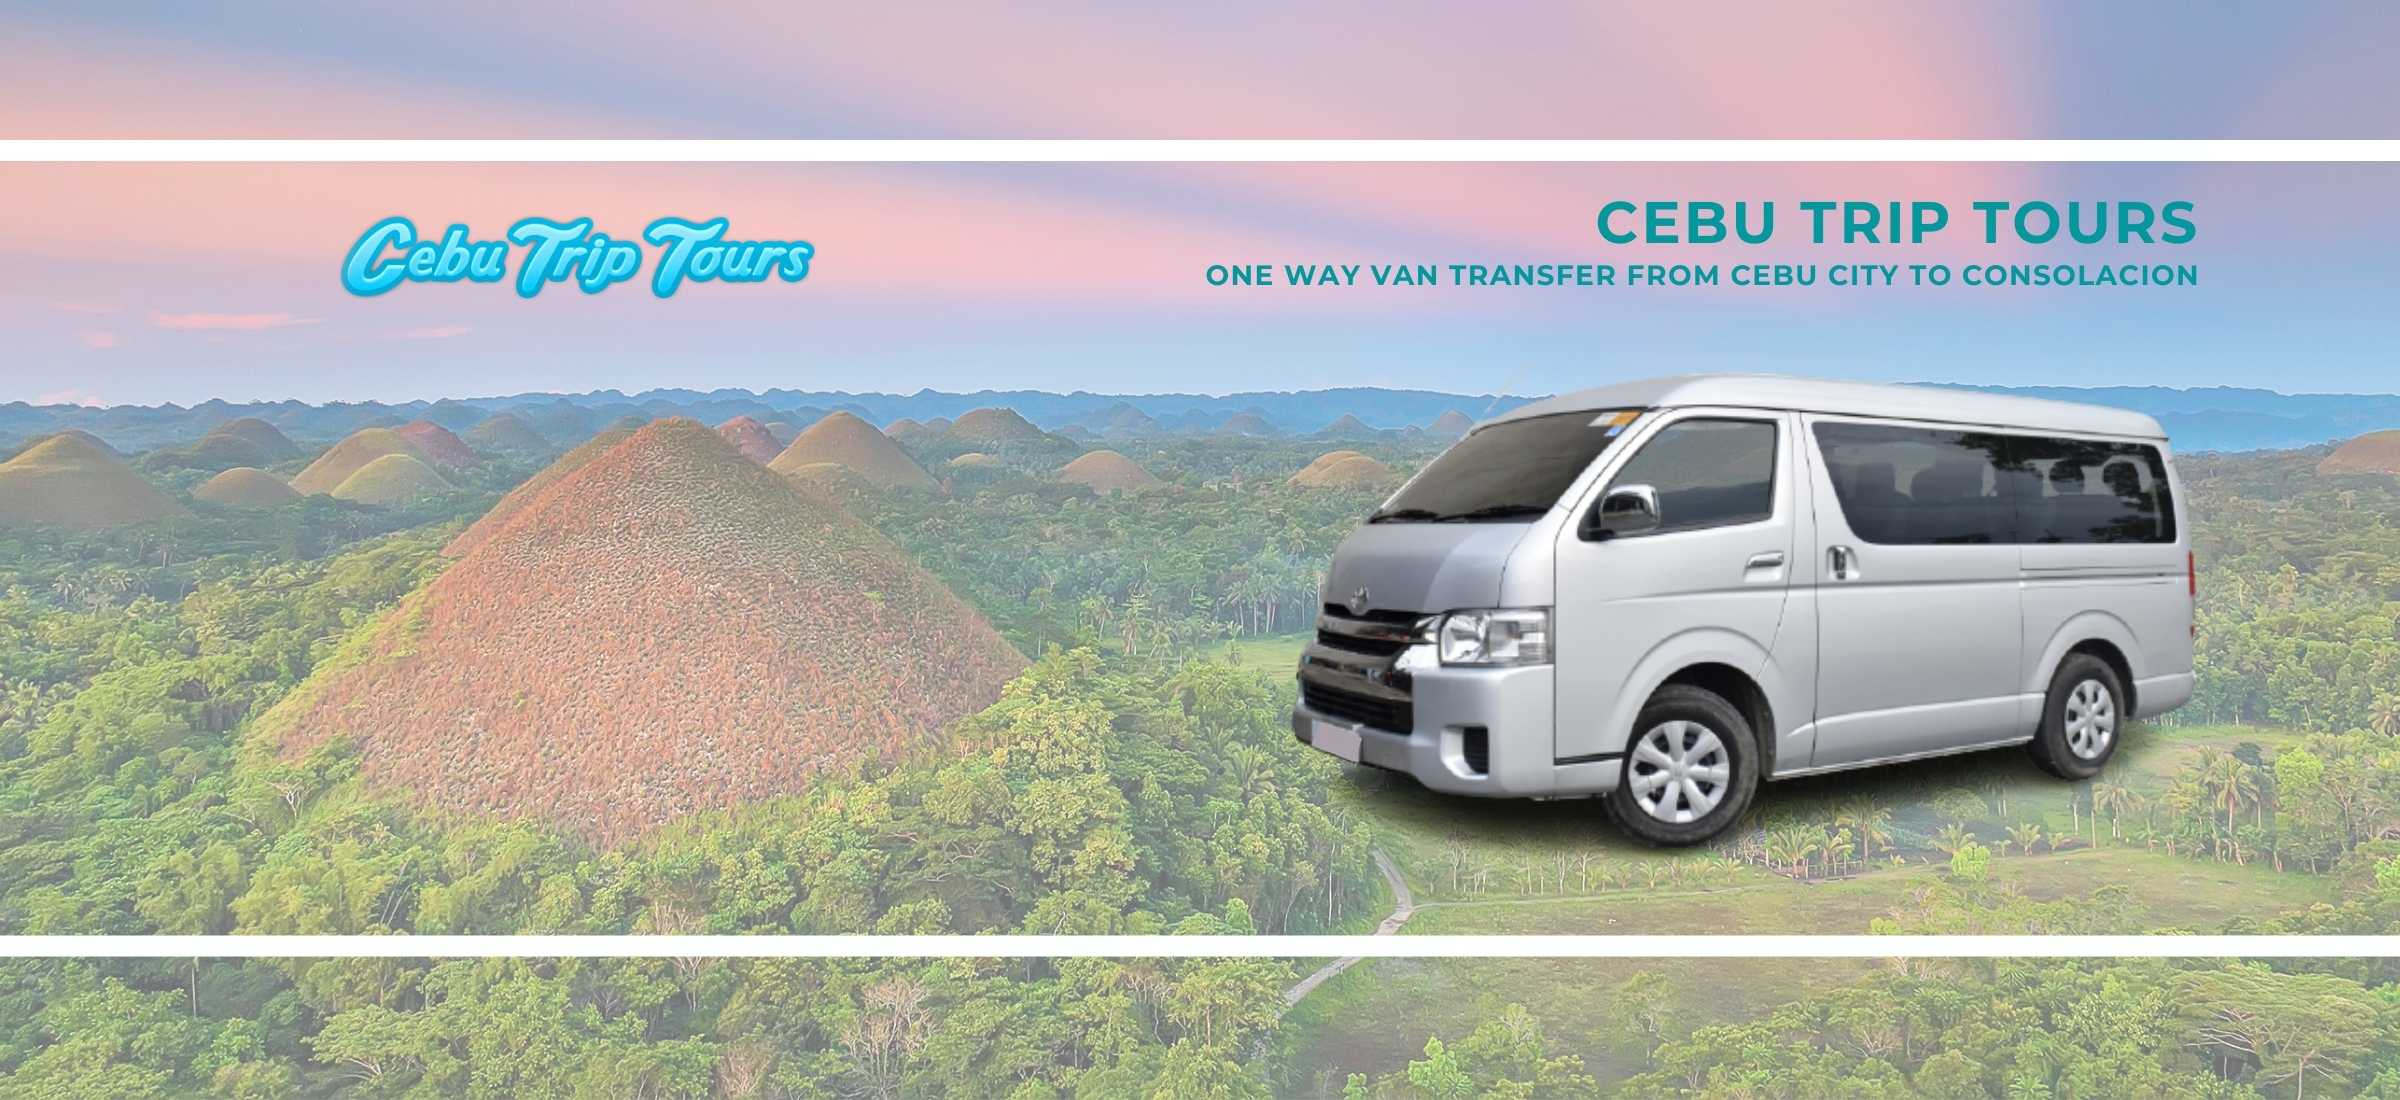 One Way Transfer from Cebu City to Consolacion